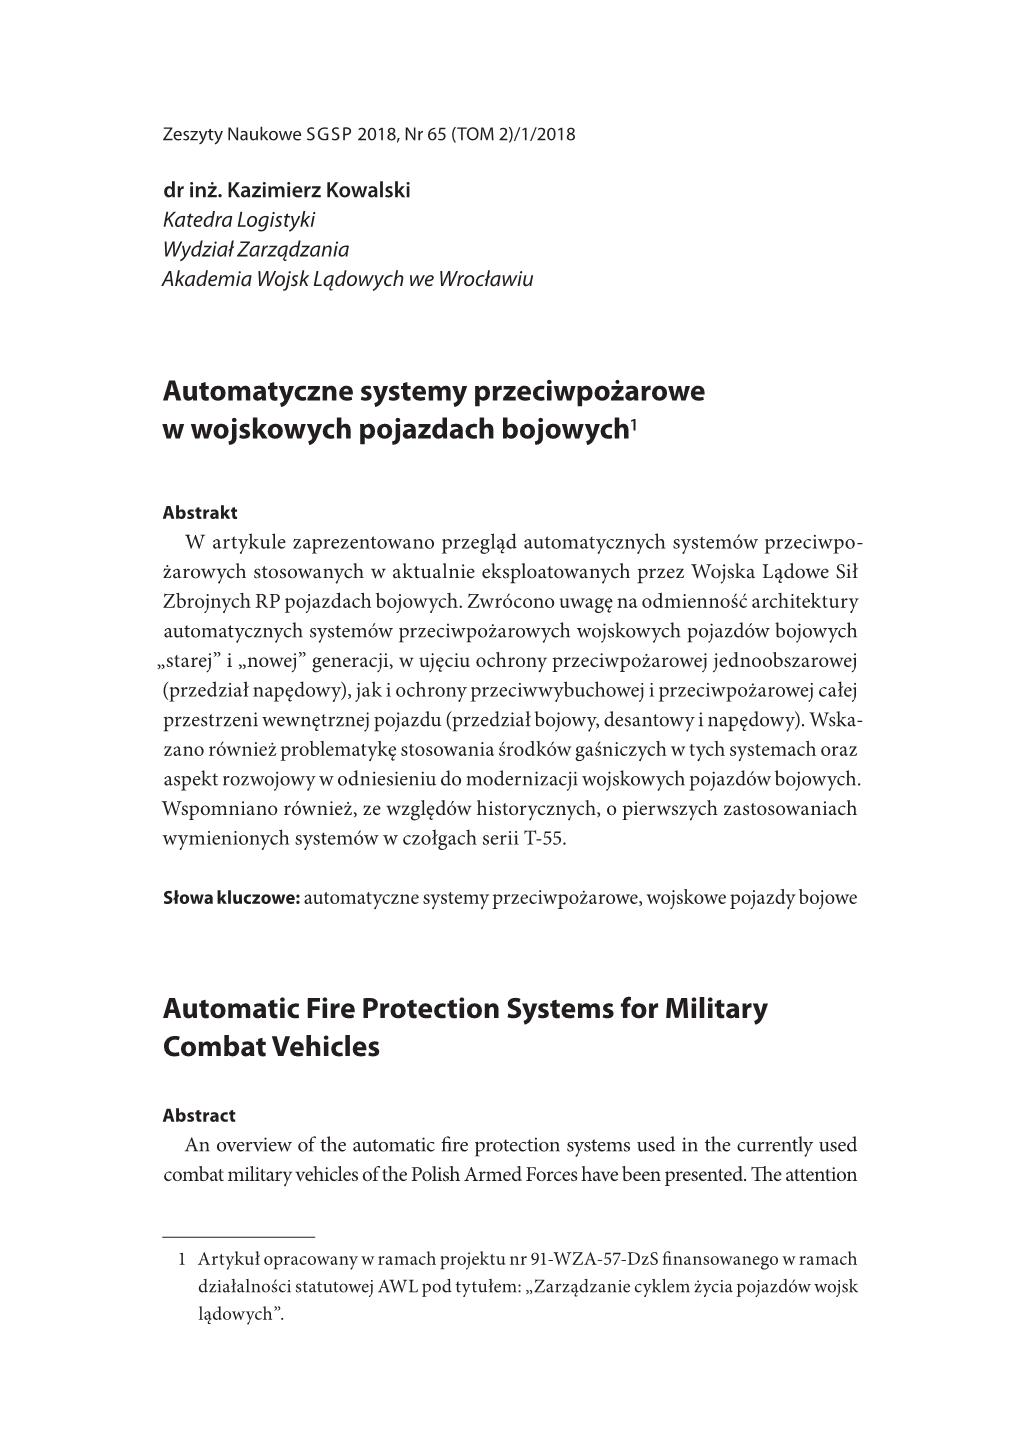 Automatyczne Systemy Przeciwpożarowe W Wojskowych Pojazdach Bojowych1